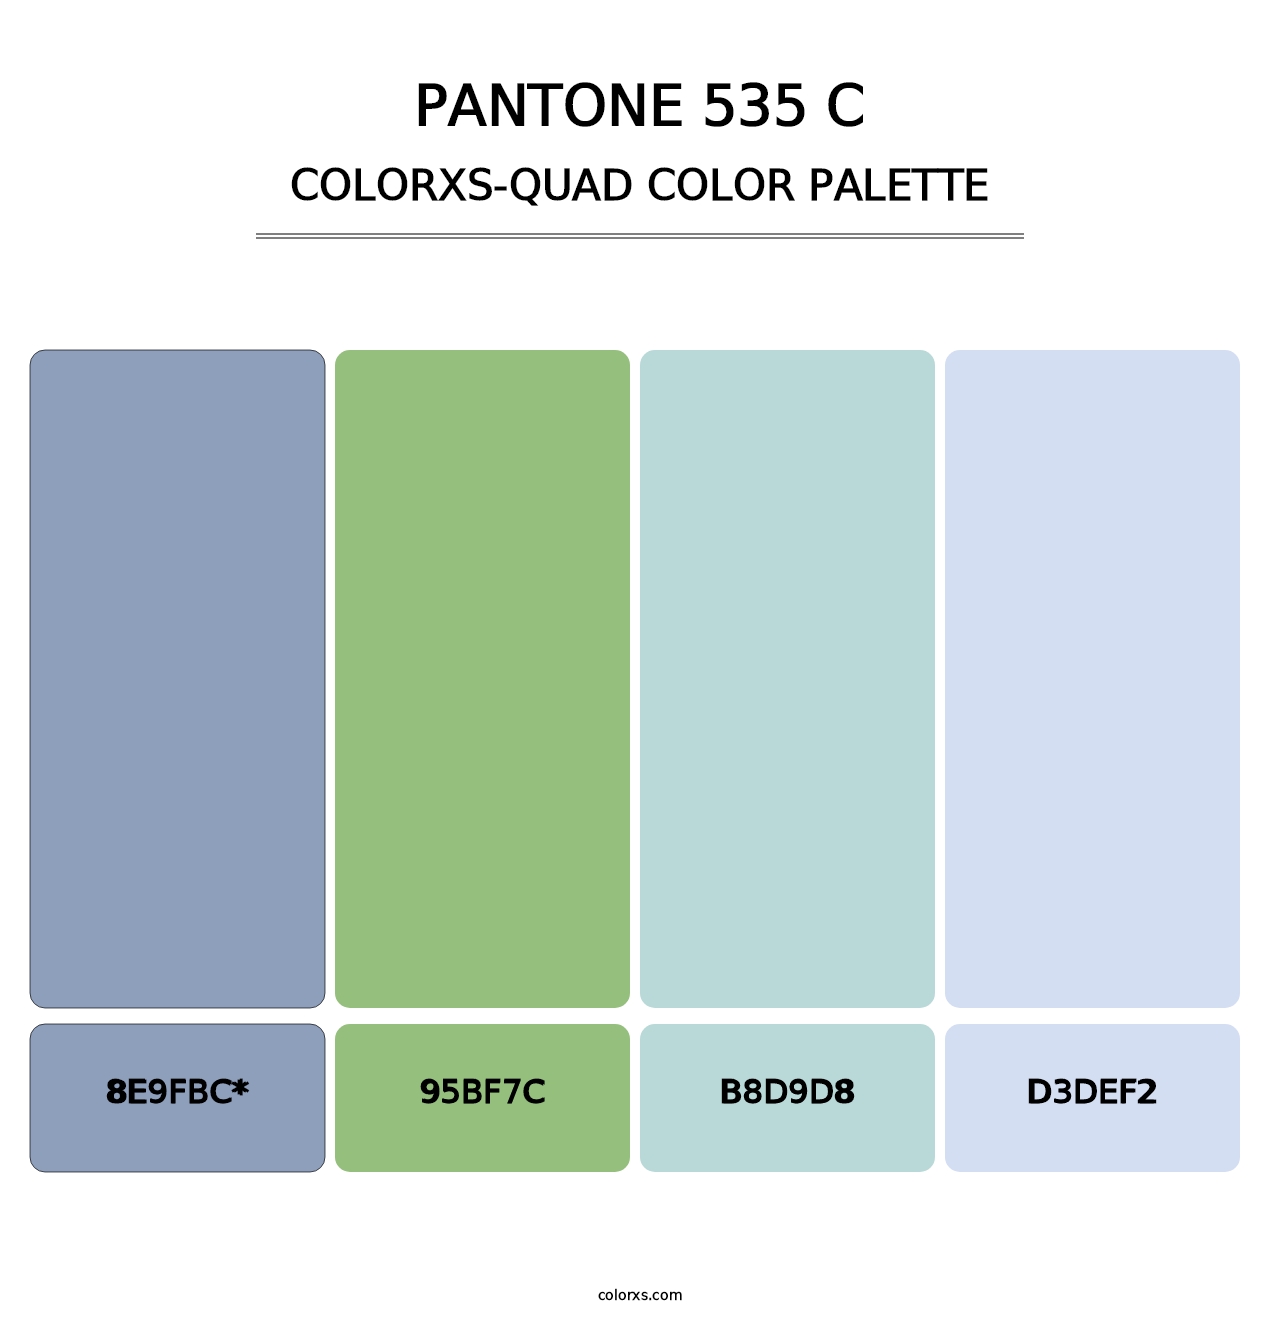 PANTONE 535 C - Colorxs Quad Palette